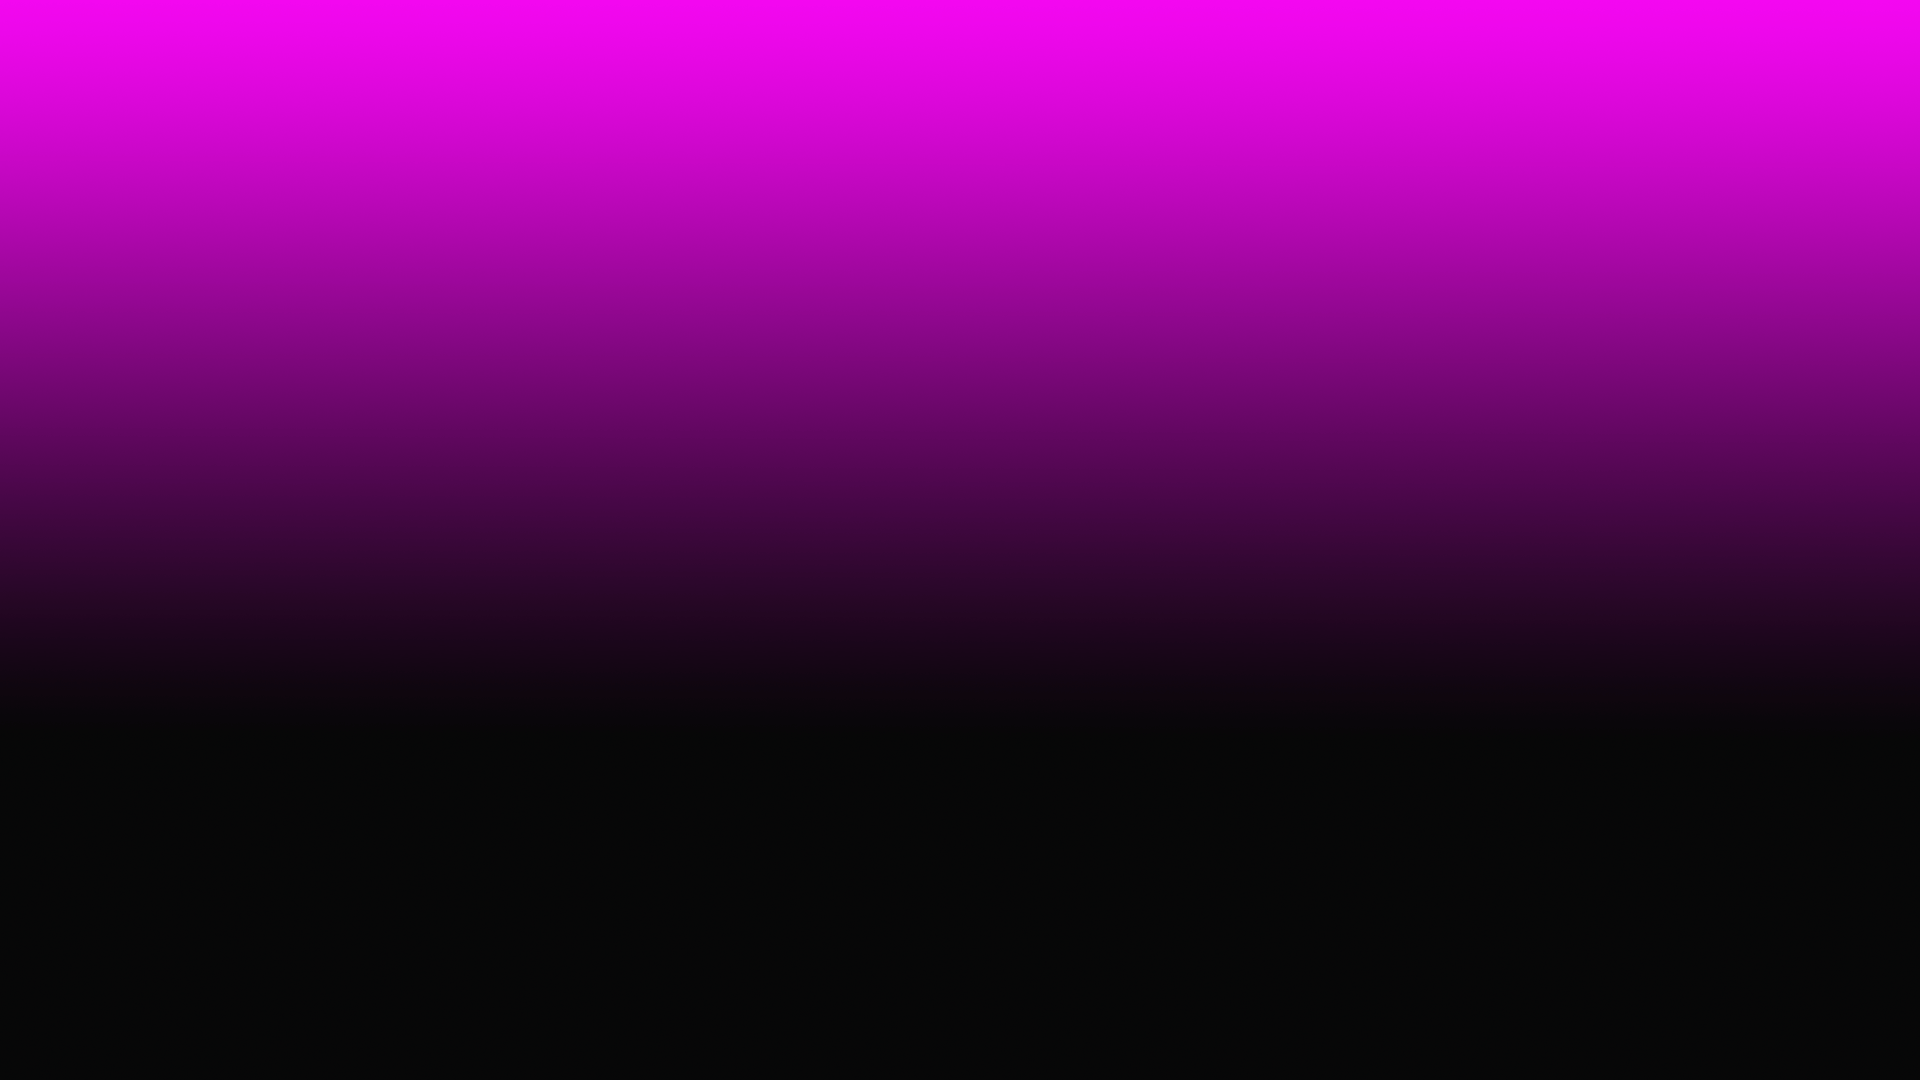 Hình nền gradient hồng - Để tô điểm cho màn hình của bạn trở nên tươi sáng hơn, hãy chọn hình nền gradient hồng nữ tính. Sắc màu pastel hài hòa sẽ đem đến cho bạn cảm giác dịu dàng và tràn đầy yêu thương.